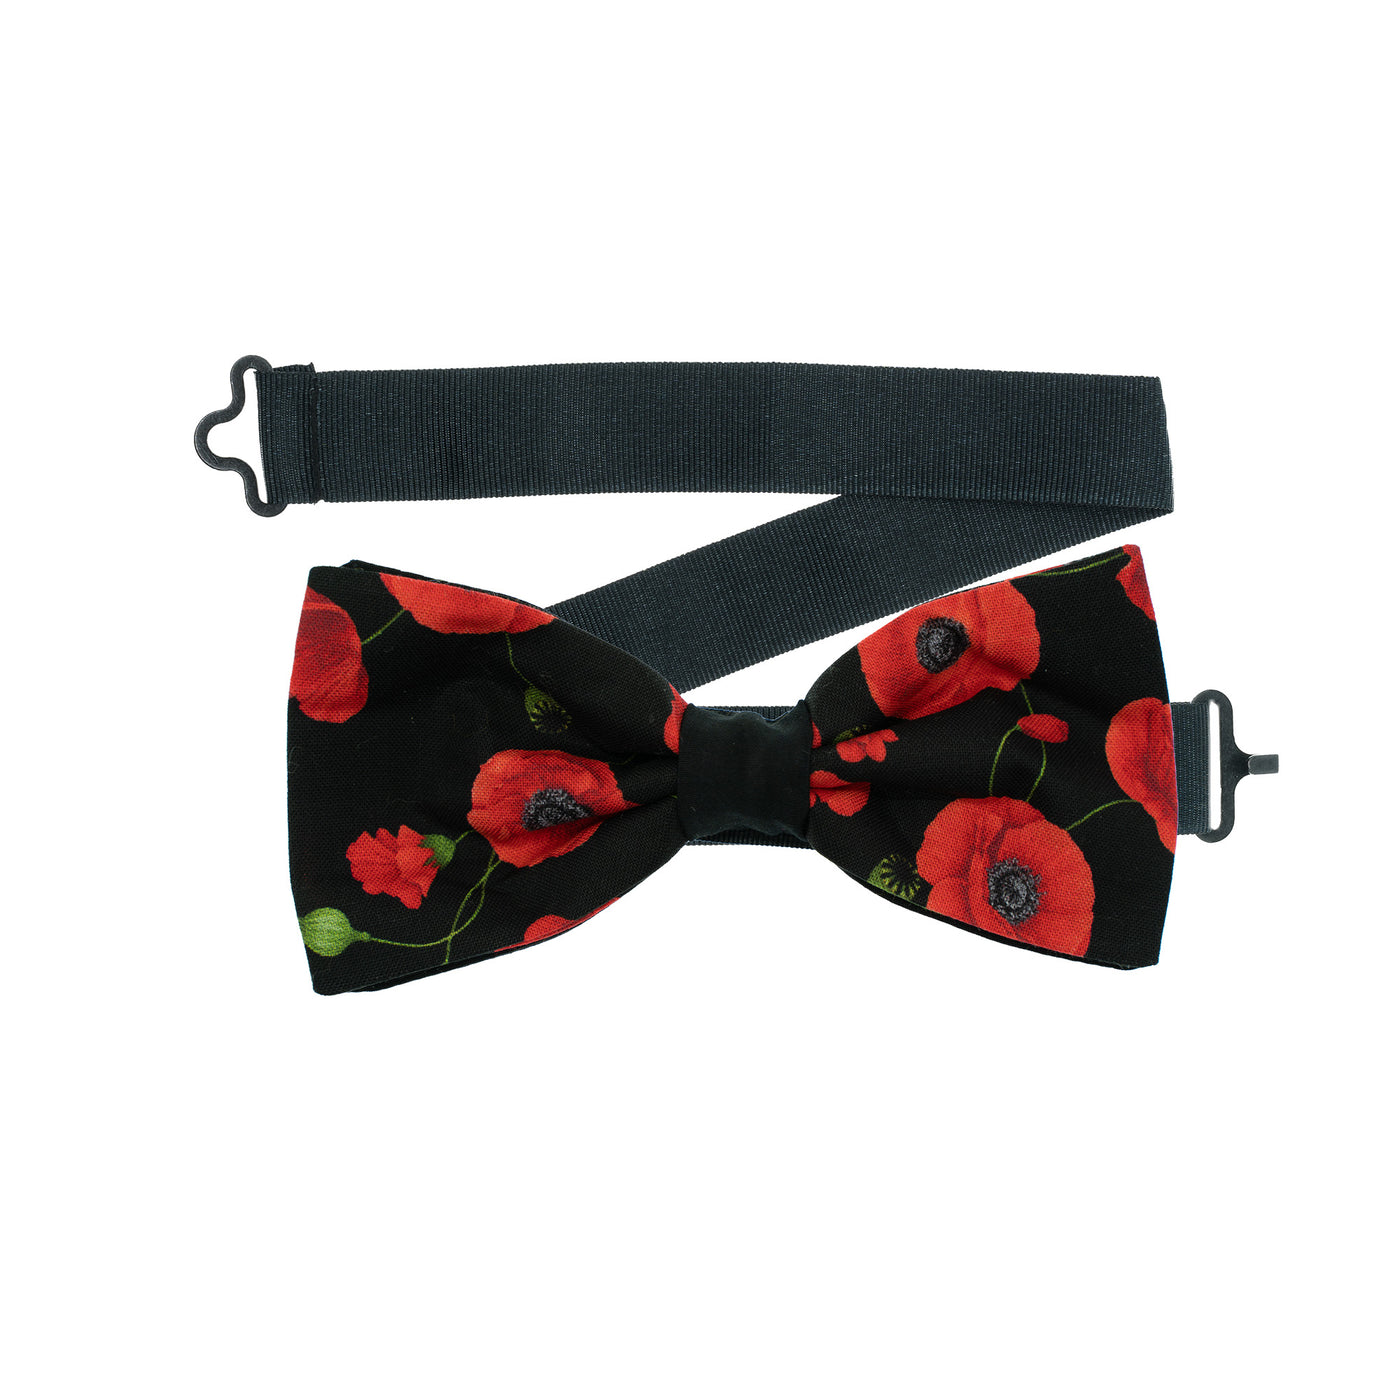 Poppy Bow Tie